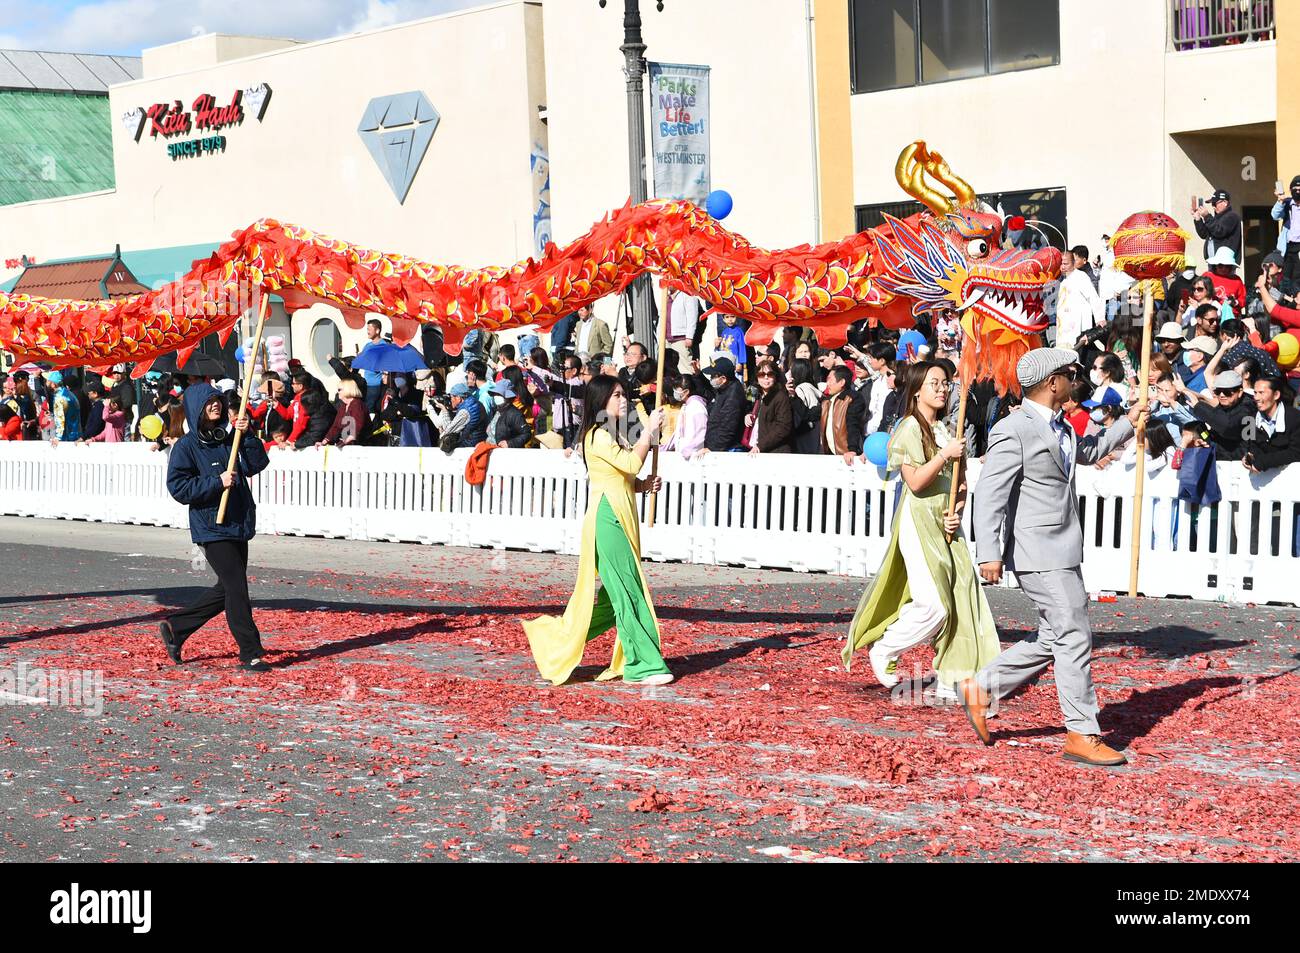 WESTMINSTER, KALIFORNIEN - 22. JANUAR 2023: Menschen mit einem roten Drachen während der Tet Parade zum Jahr der Katze. Stockfoto